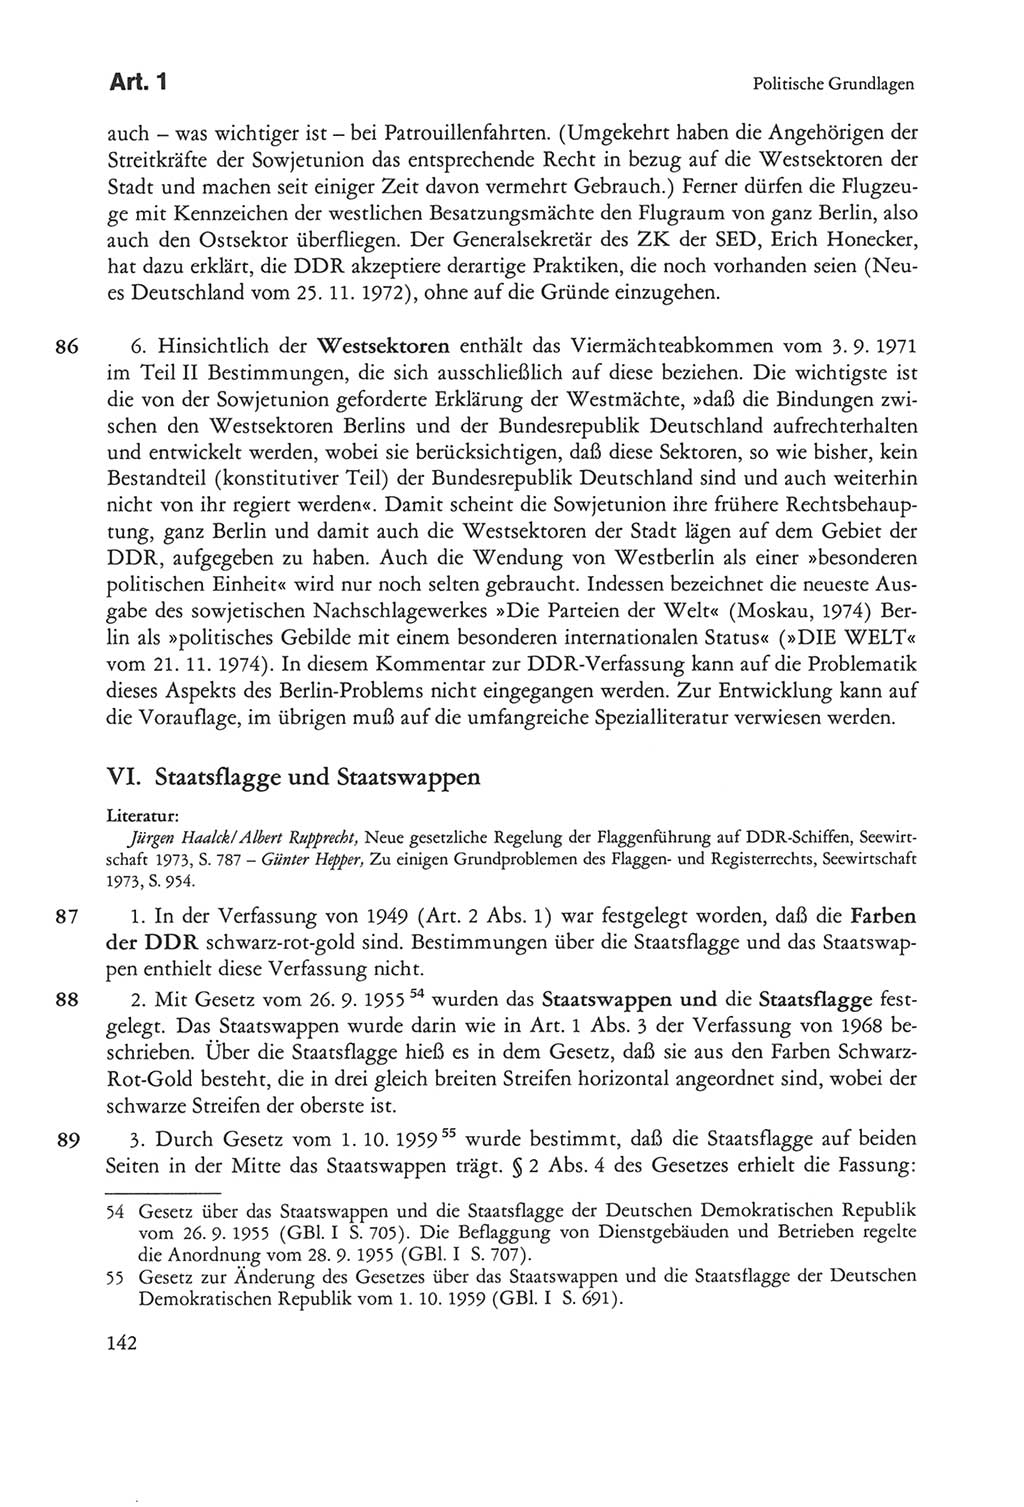 Die sozialistische Verfassung der Deutschen Demokratischen Republik (DDR), Kommentar 1982, Seite 142 (Soz. Verf. DDR Komm. 1982, S. 142)